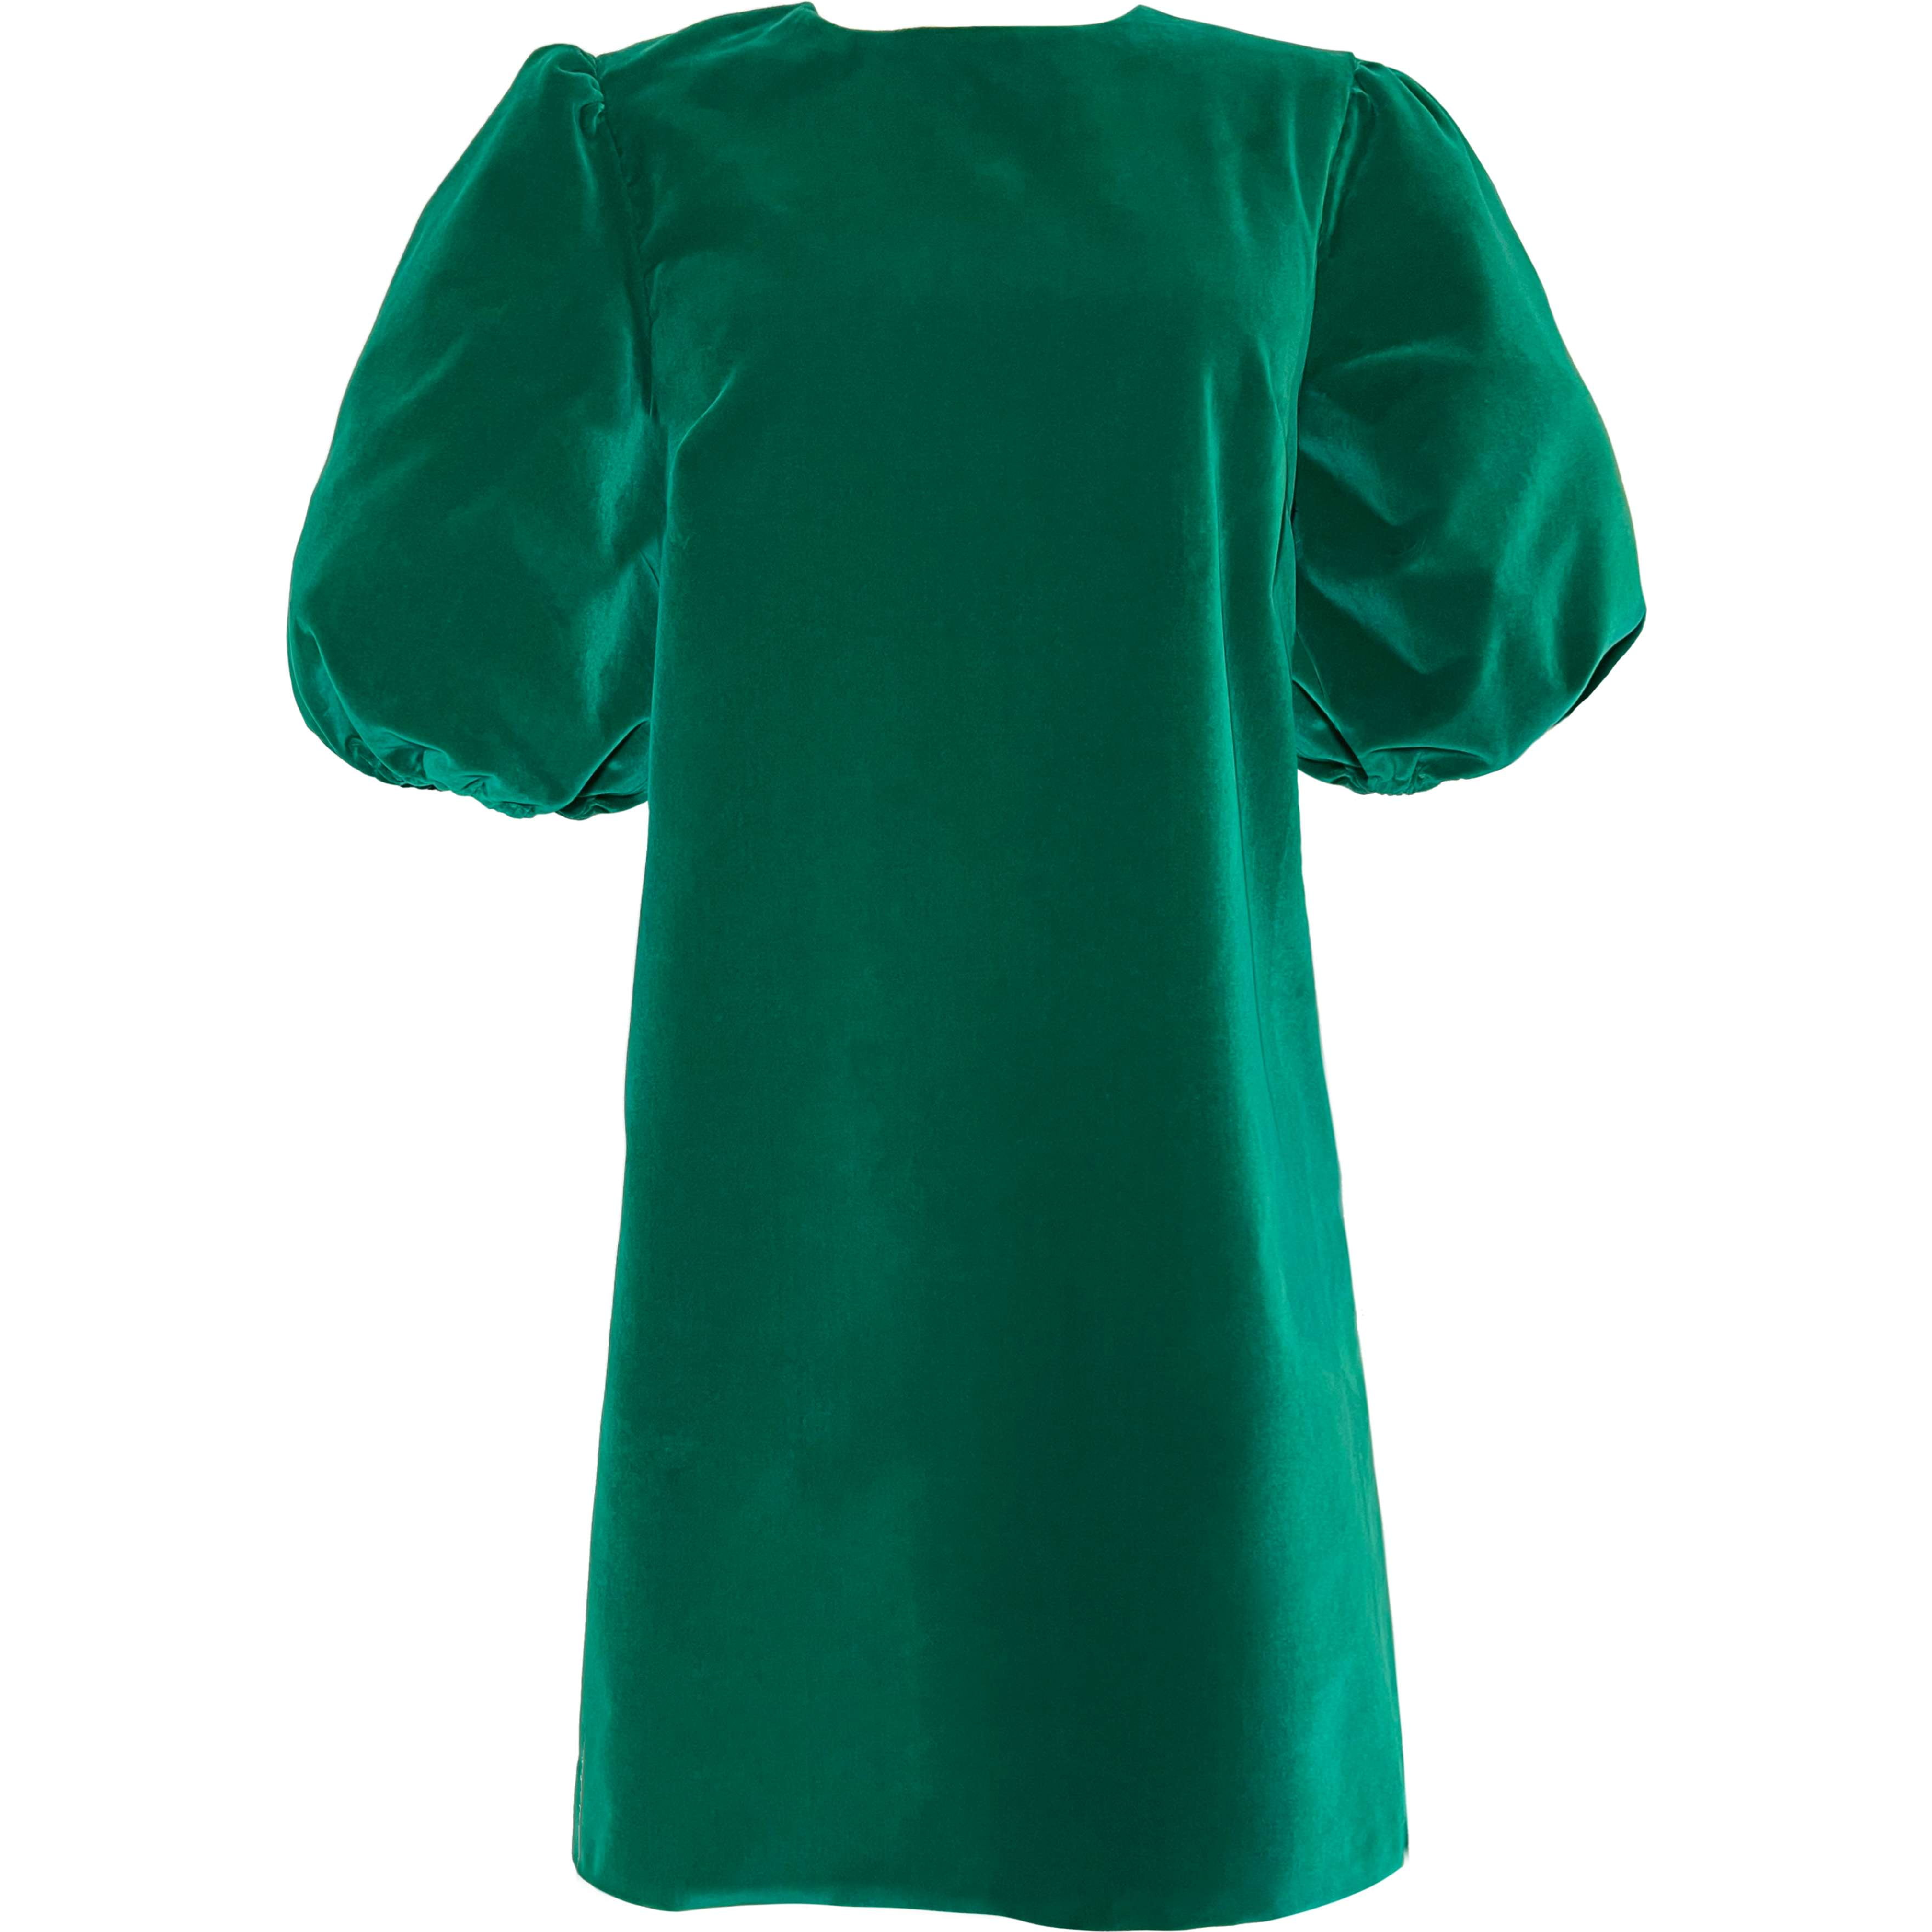 Women's Barb Dress in Aurora Green Velvet by Casey Marks